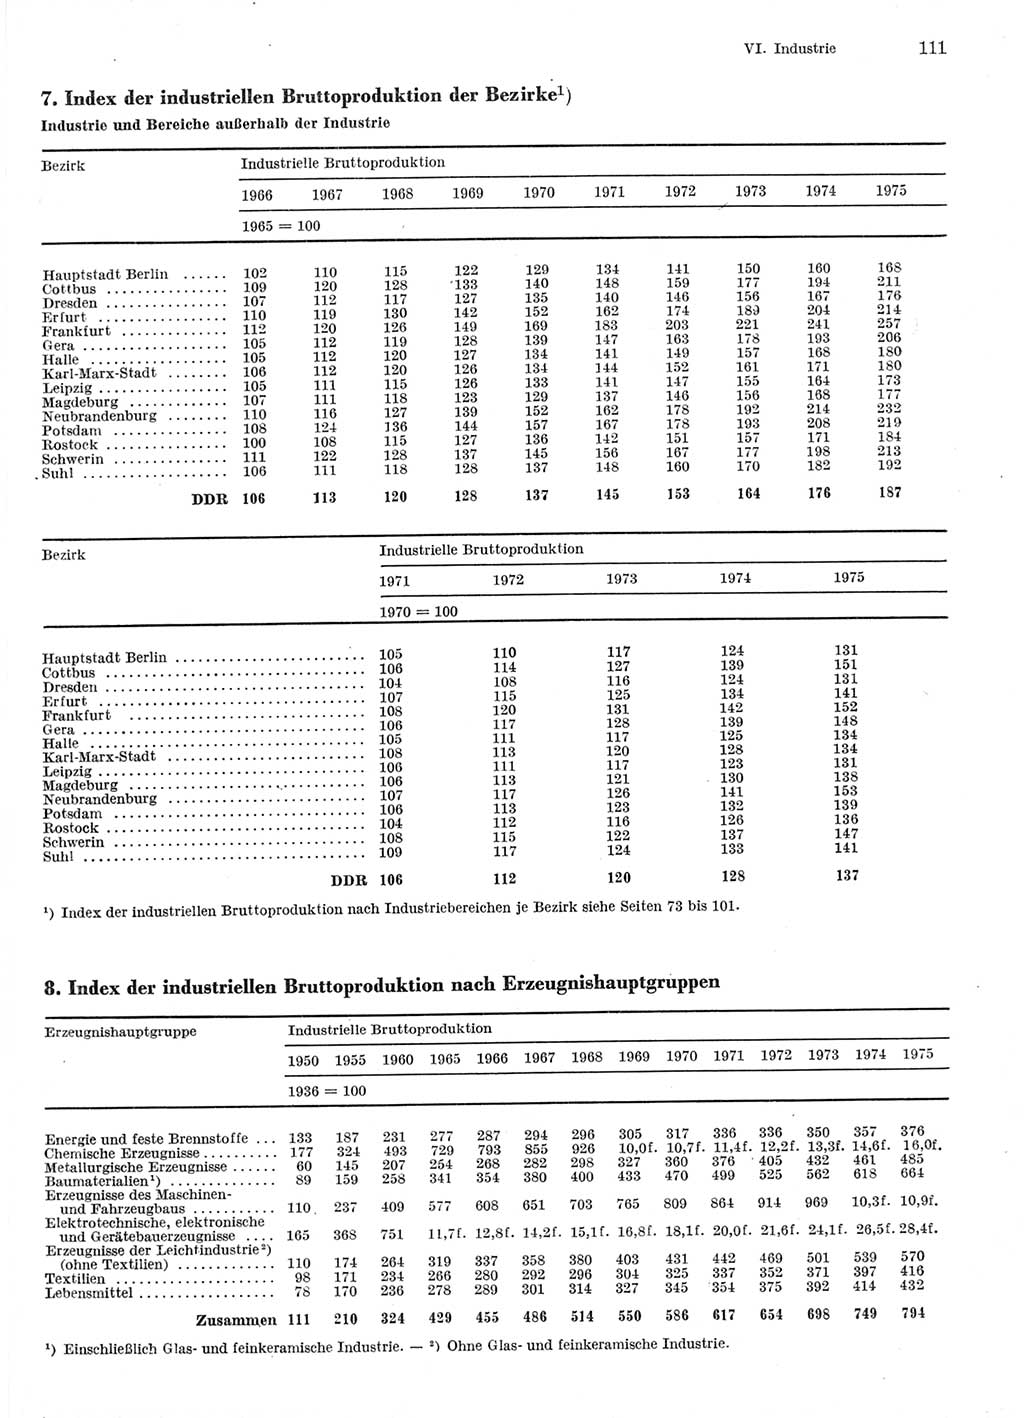 Statistisches Jahrbuch der Deutschen Demokratischen Republik (DDR) 1976, Seite 111 (Stat. Jb. DDR 1976, S. 111)